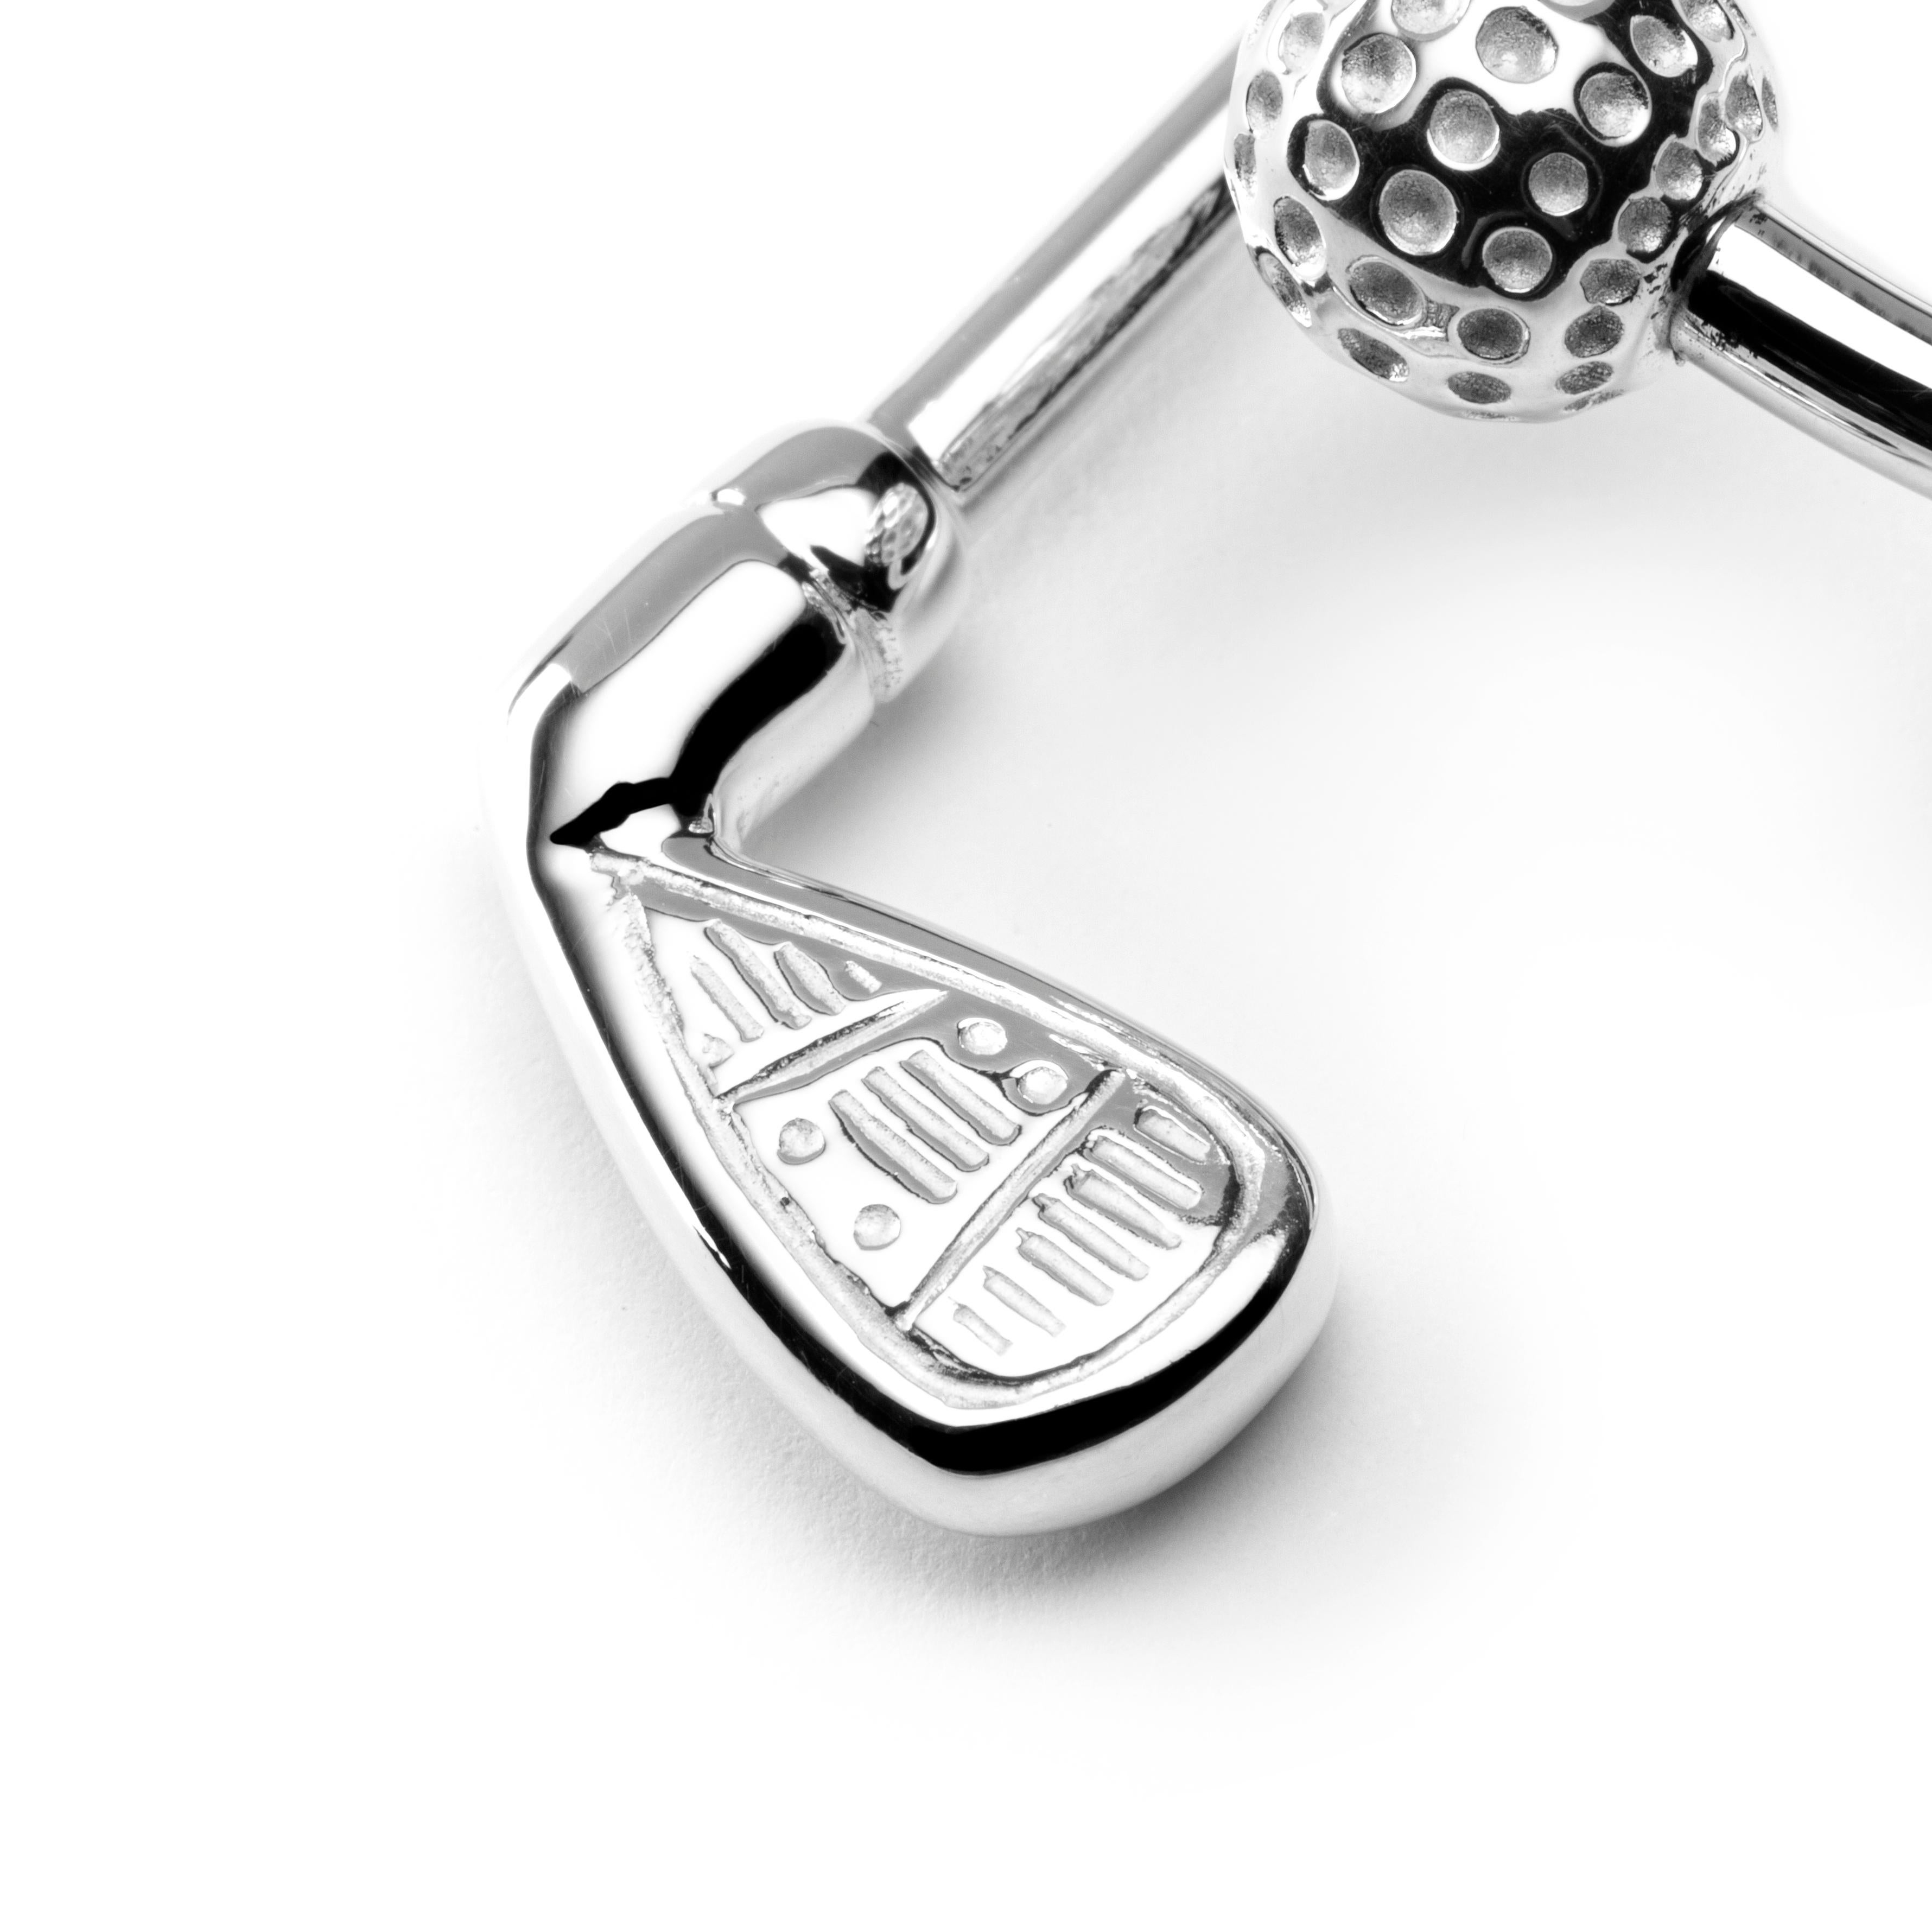 Collection design Alex Jona, fabriqué à la main en Italie, porte-clés Ball et Golf-Club en argent sterling plaqué rhodium. Dimensions : L x 2 in/ 50,91 mm x l x 1,12 in/ 28,4 mm.
Les cadeaux d'Alex Jona se distinguent, non seulement par leur design